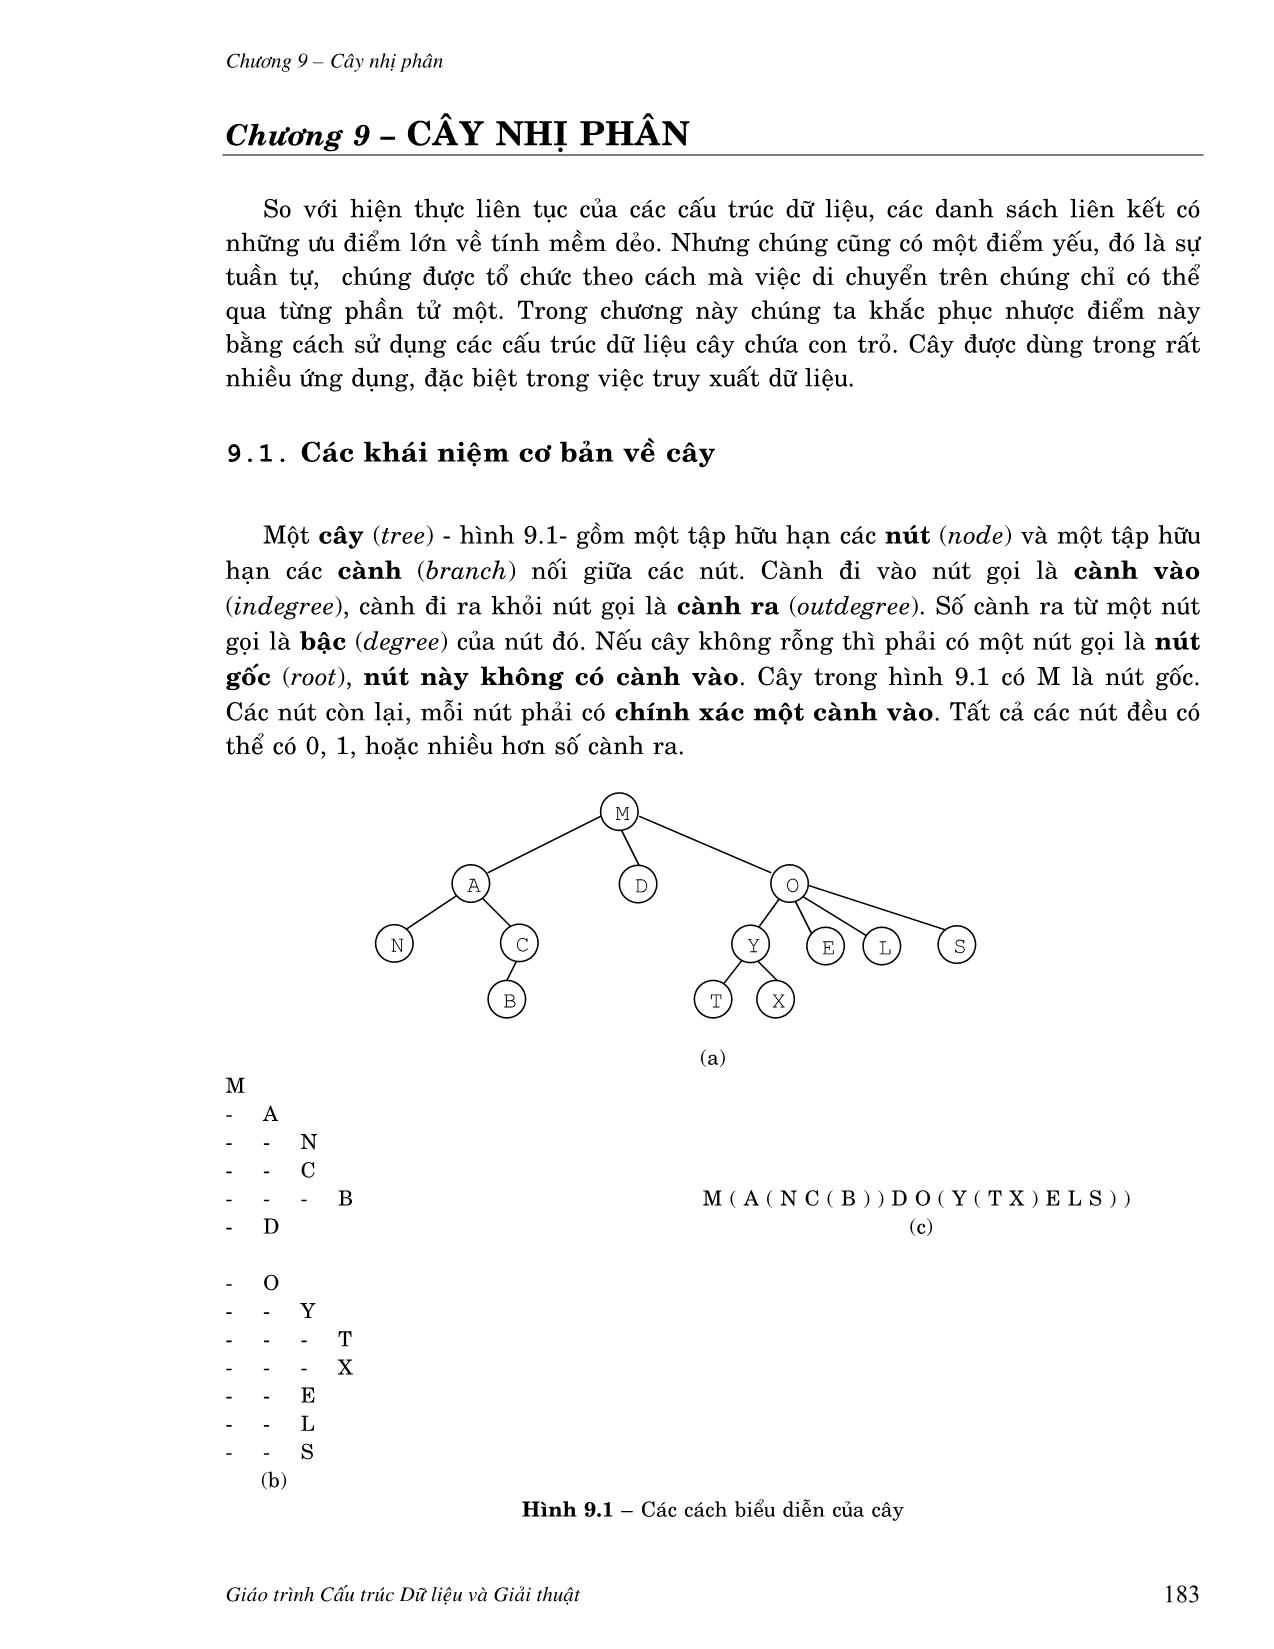 Giáo trình Cấu trúc dữ liệu và giải thuật căn bản (Phần 2) trang 1